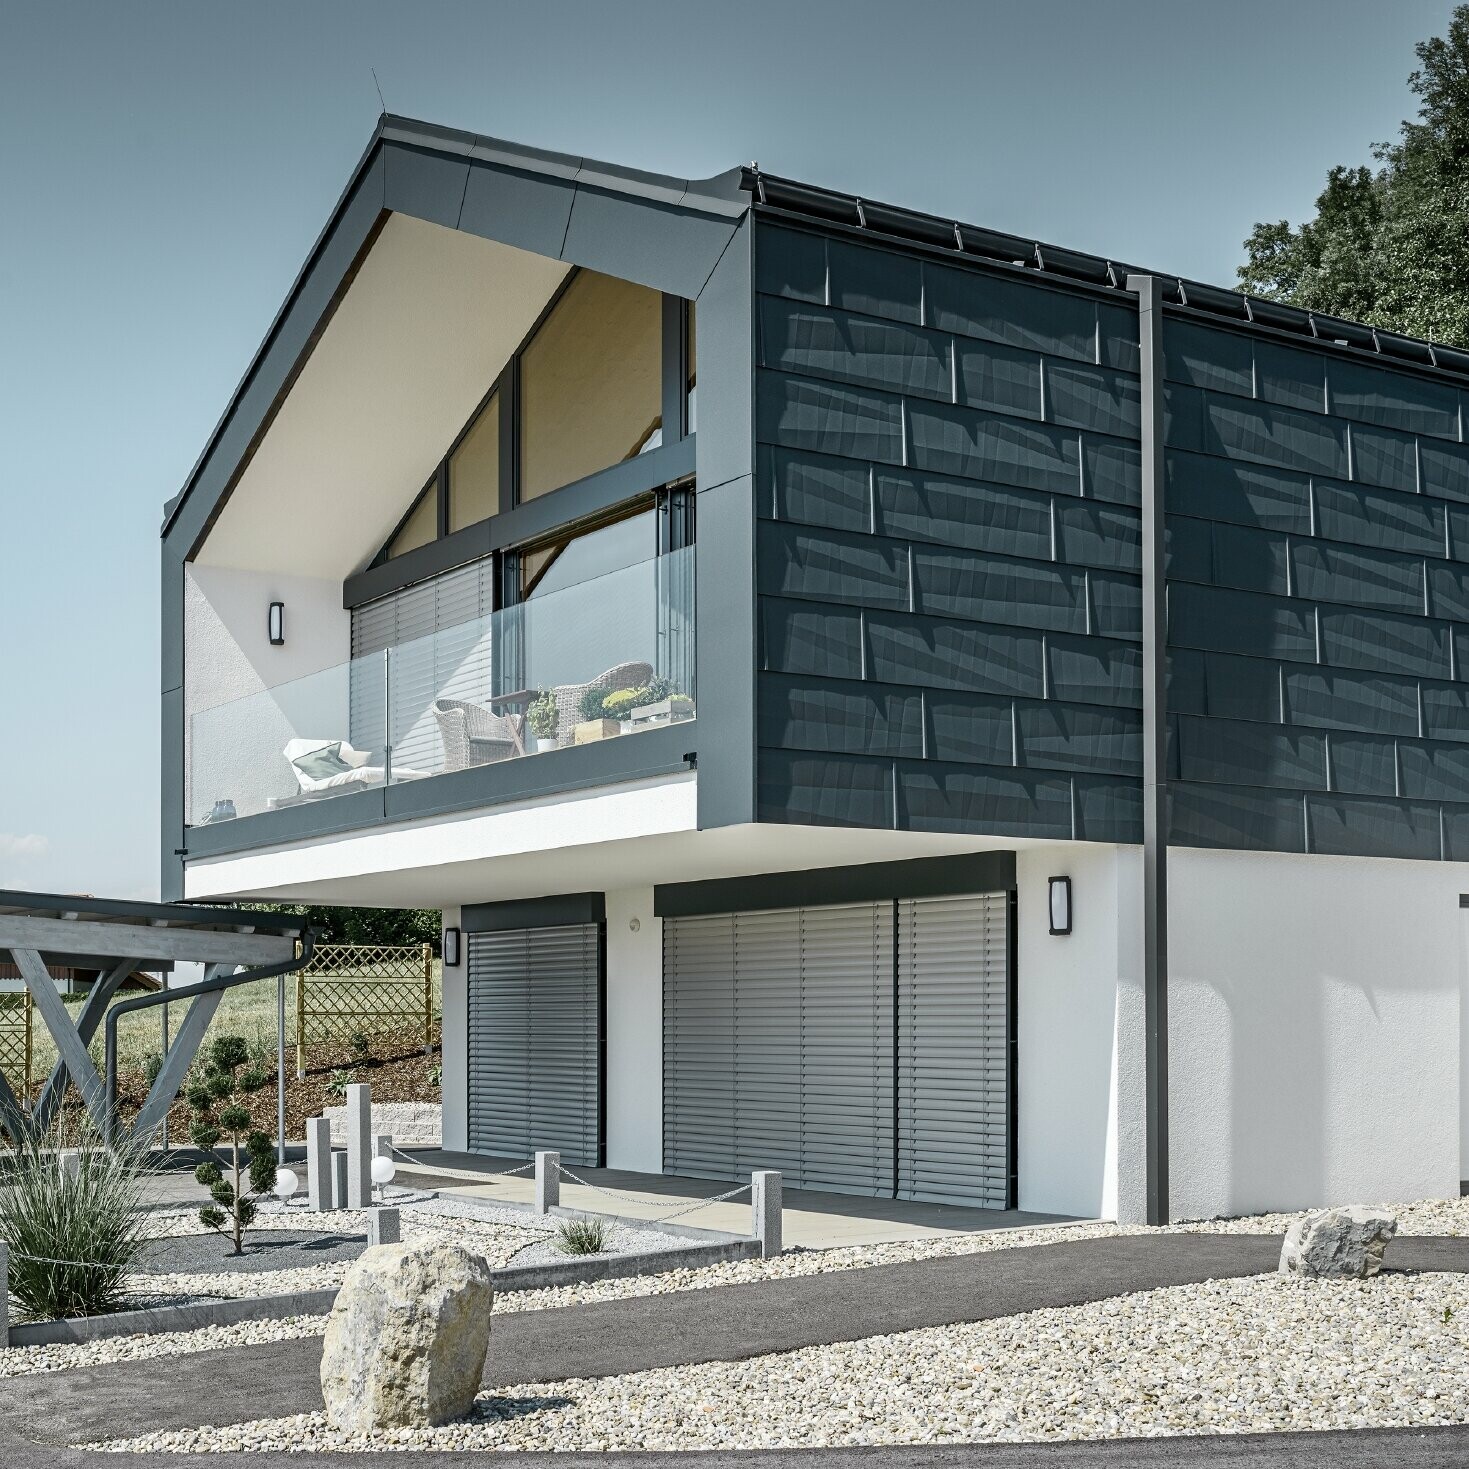 Moderne flerfamilieshus med stor vinduesfront, tag og facade blev beklædt med tag- og facadepanel FX.12 i antracit fra PREFA